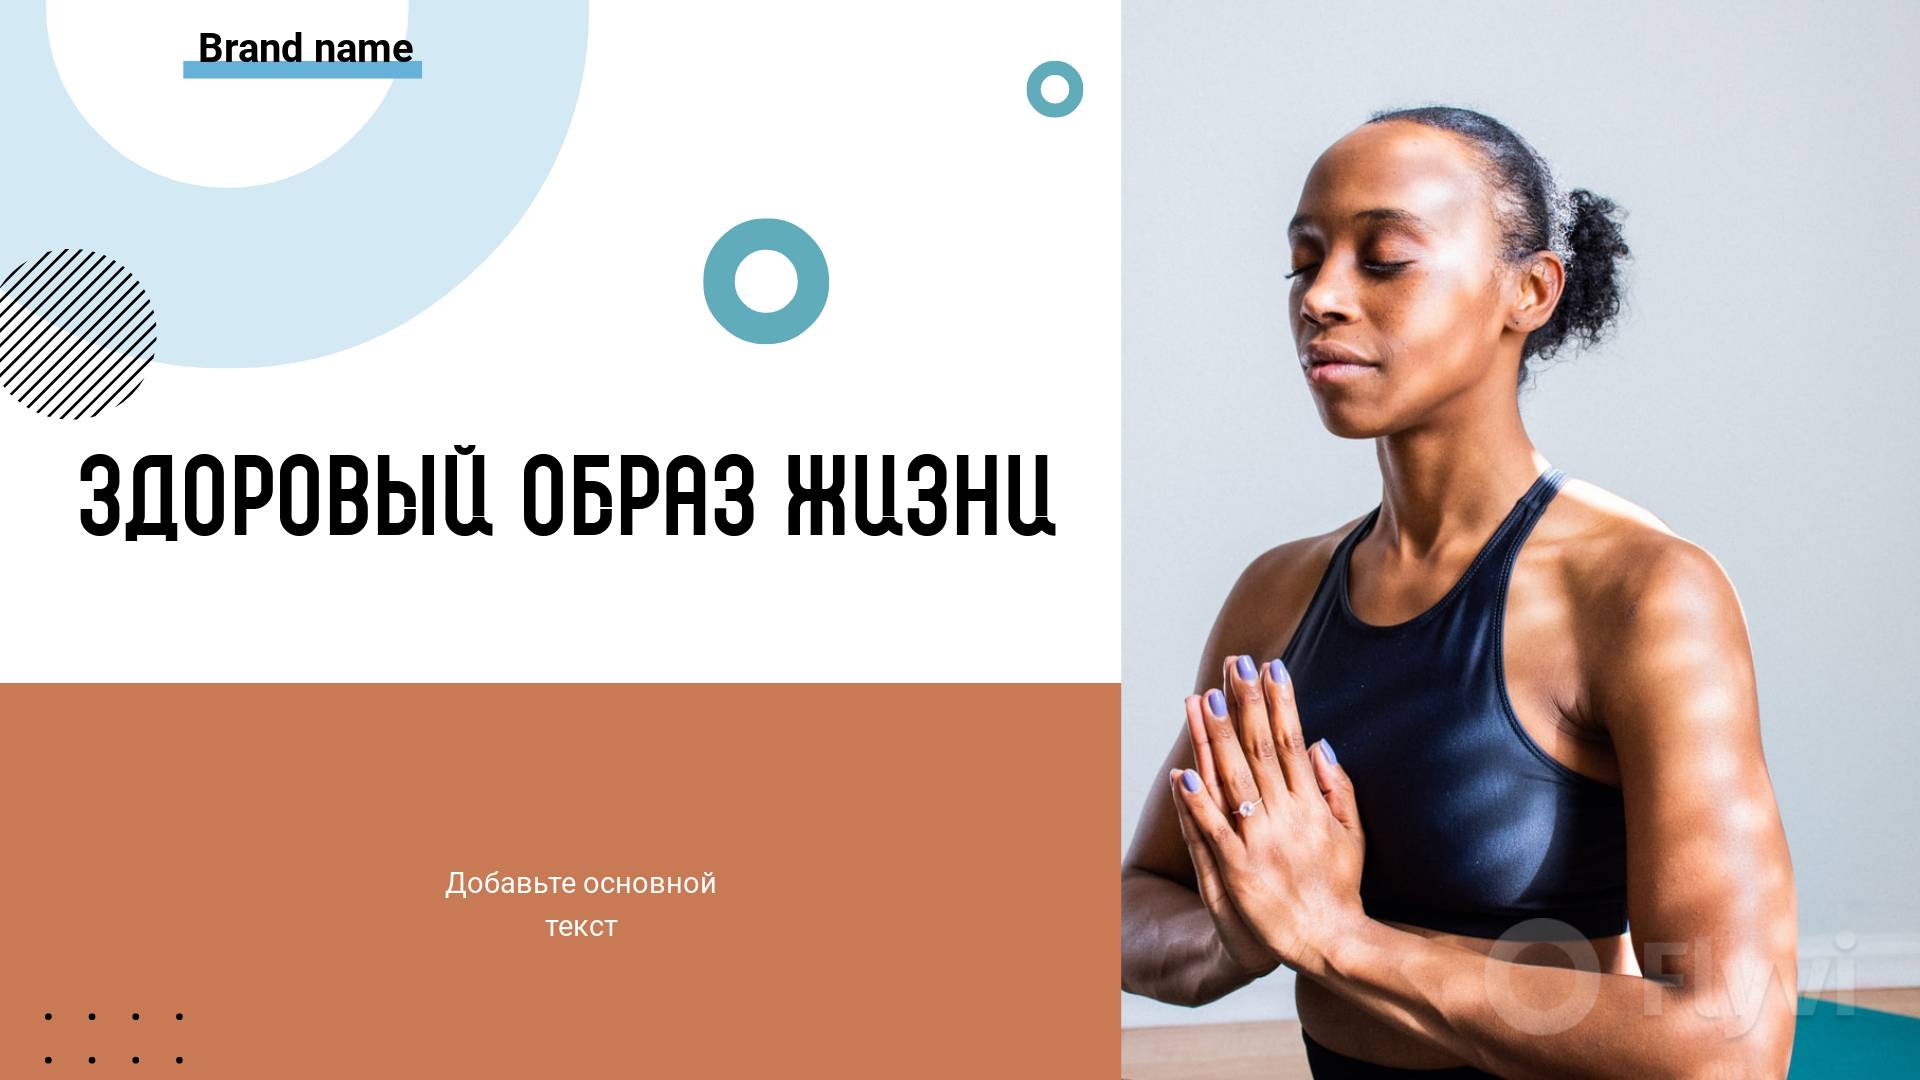 Фитнес йога и здоровый образ жизни в готовом посте для соцсетей и темнокожая девушка мулатка сидящая в асане с закрытыми глазами